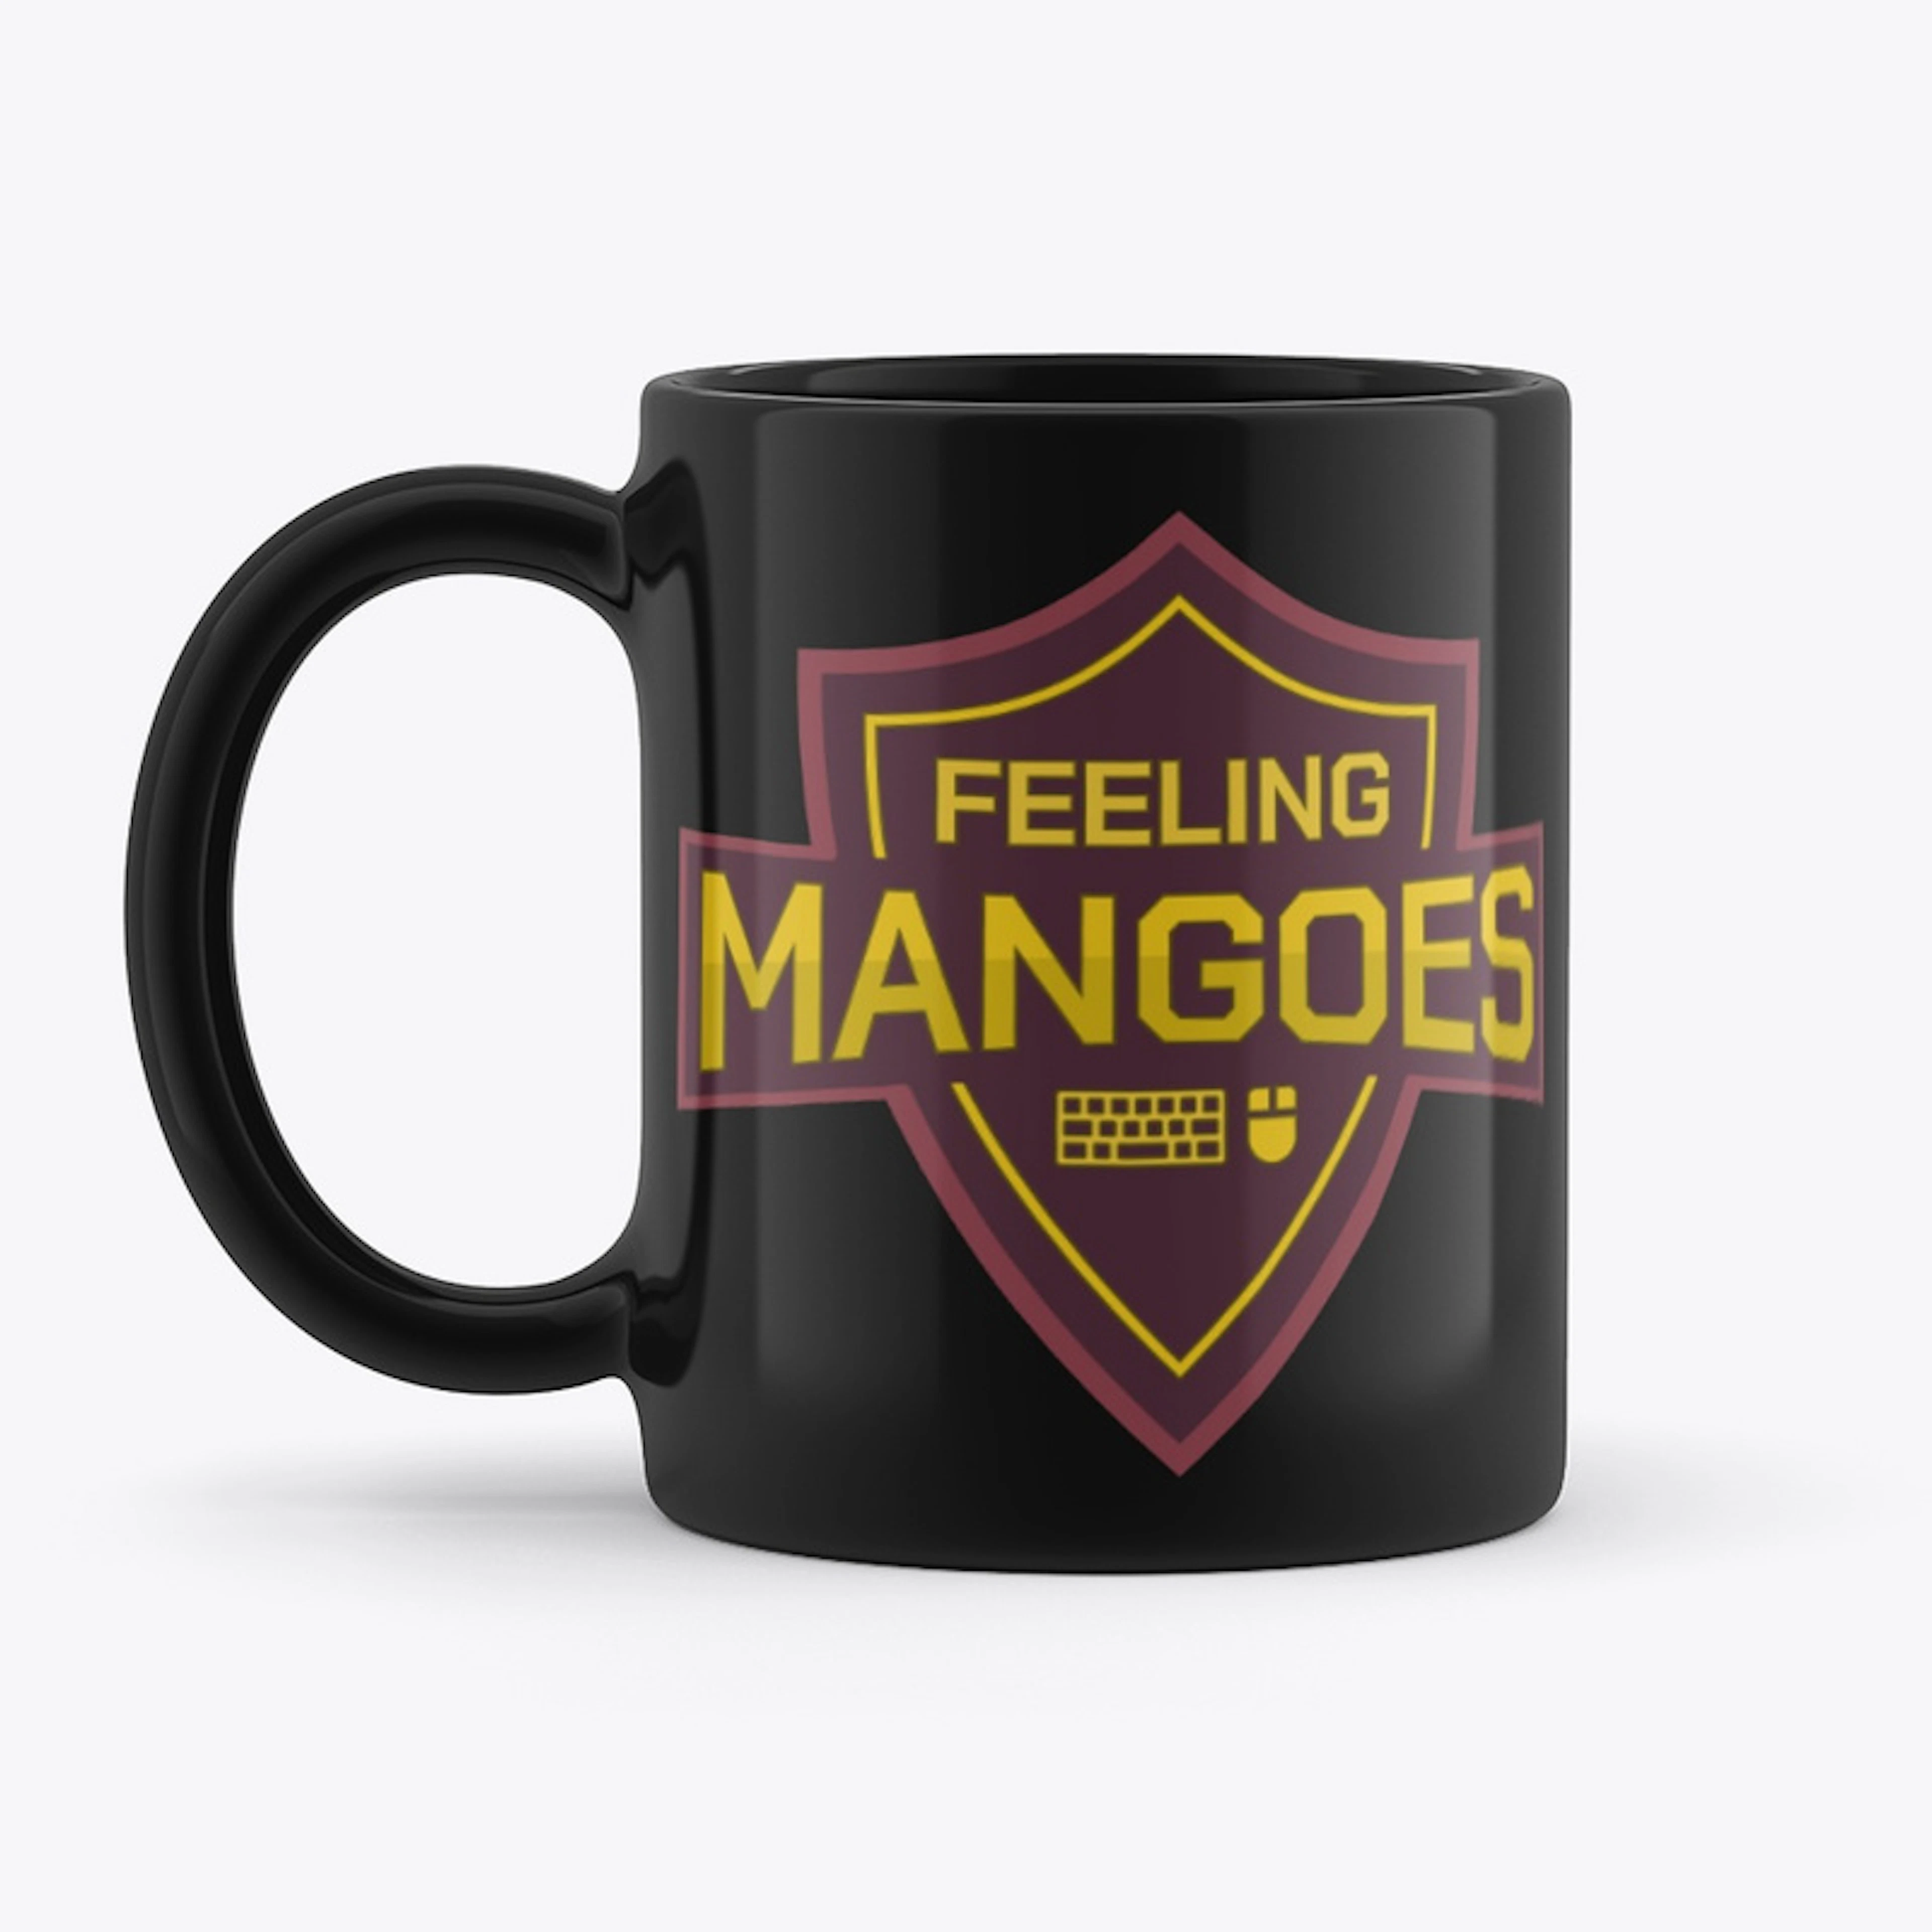 Feeling Mangoes Mug